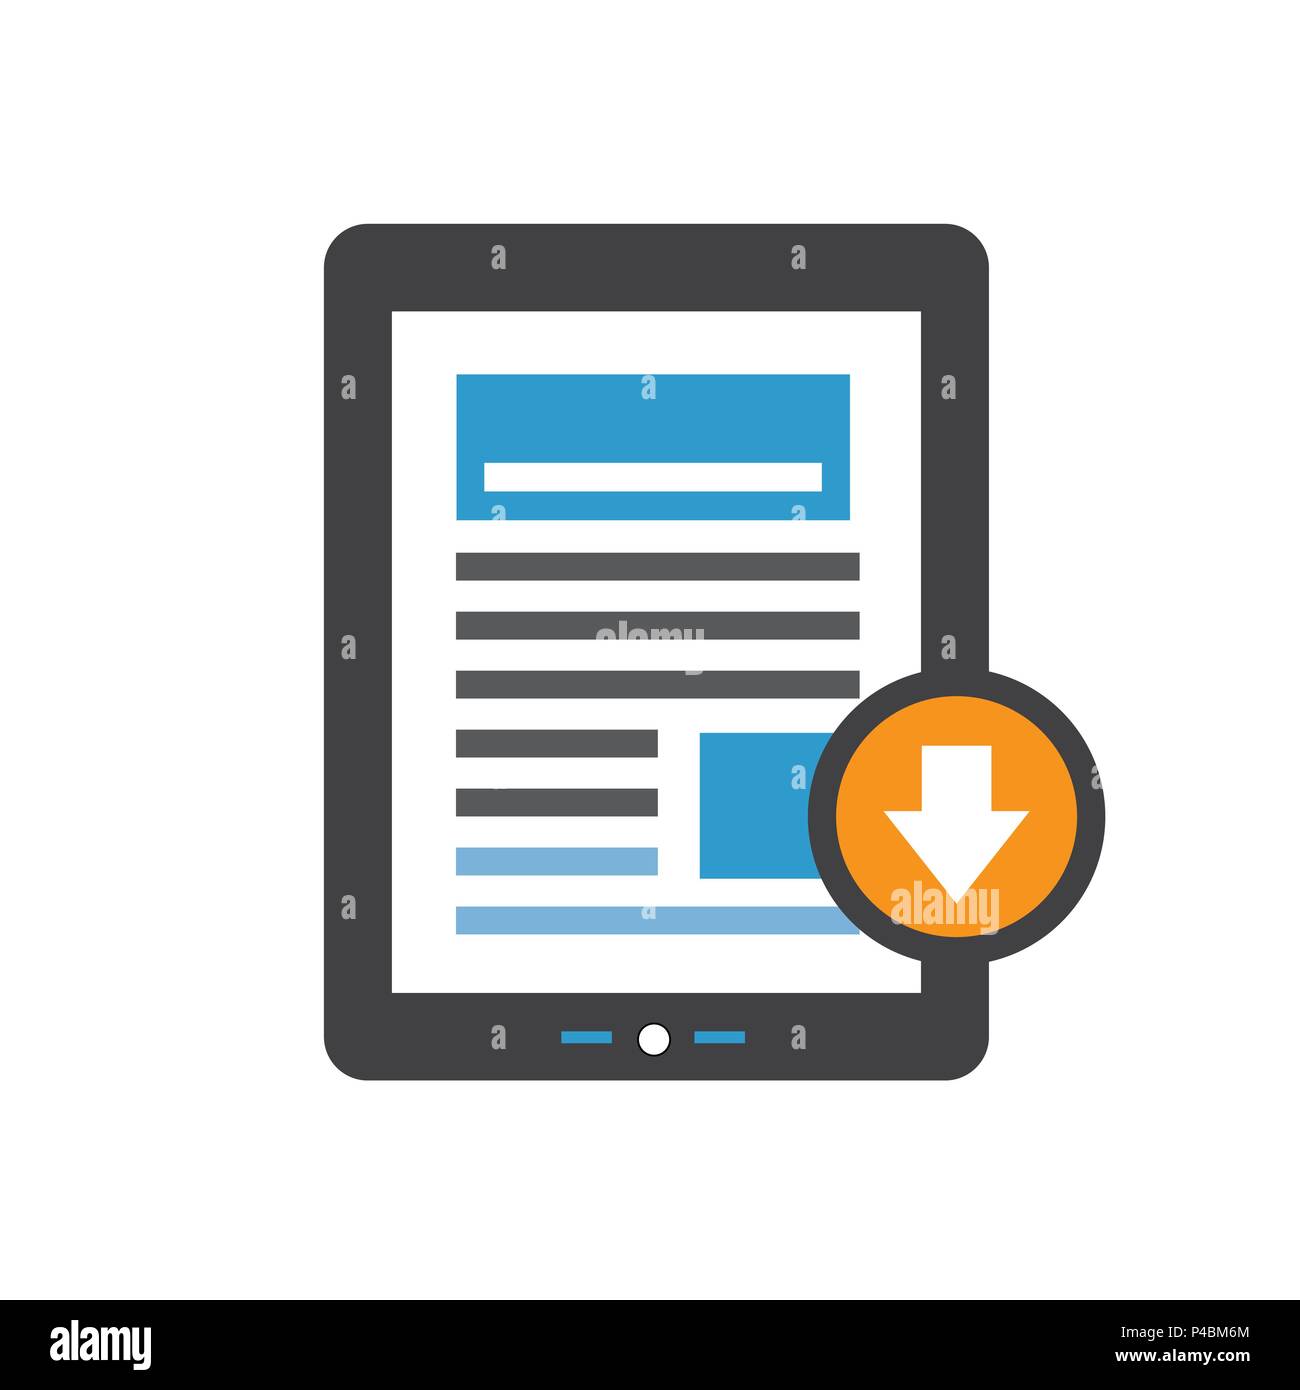 White Paper o Ebook CTA w coperchio e pulsante Scarica gratuitamente il download digitale - Chiamata per azione di marketing Illustrazione Vettoriale